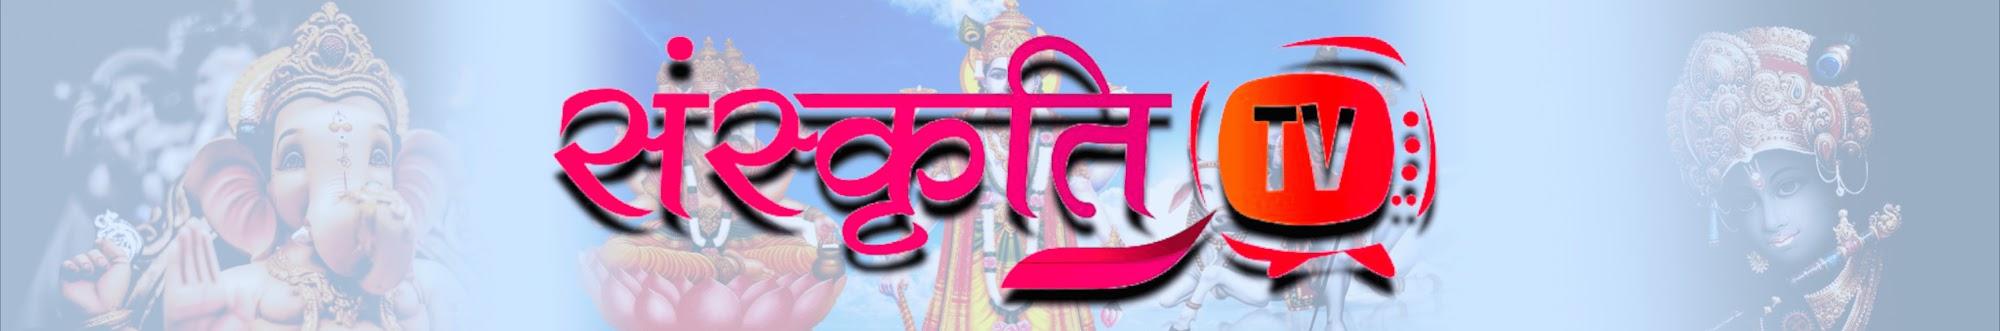 Sanskriti TV